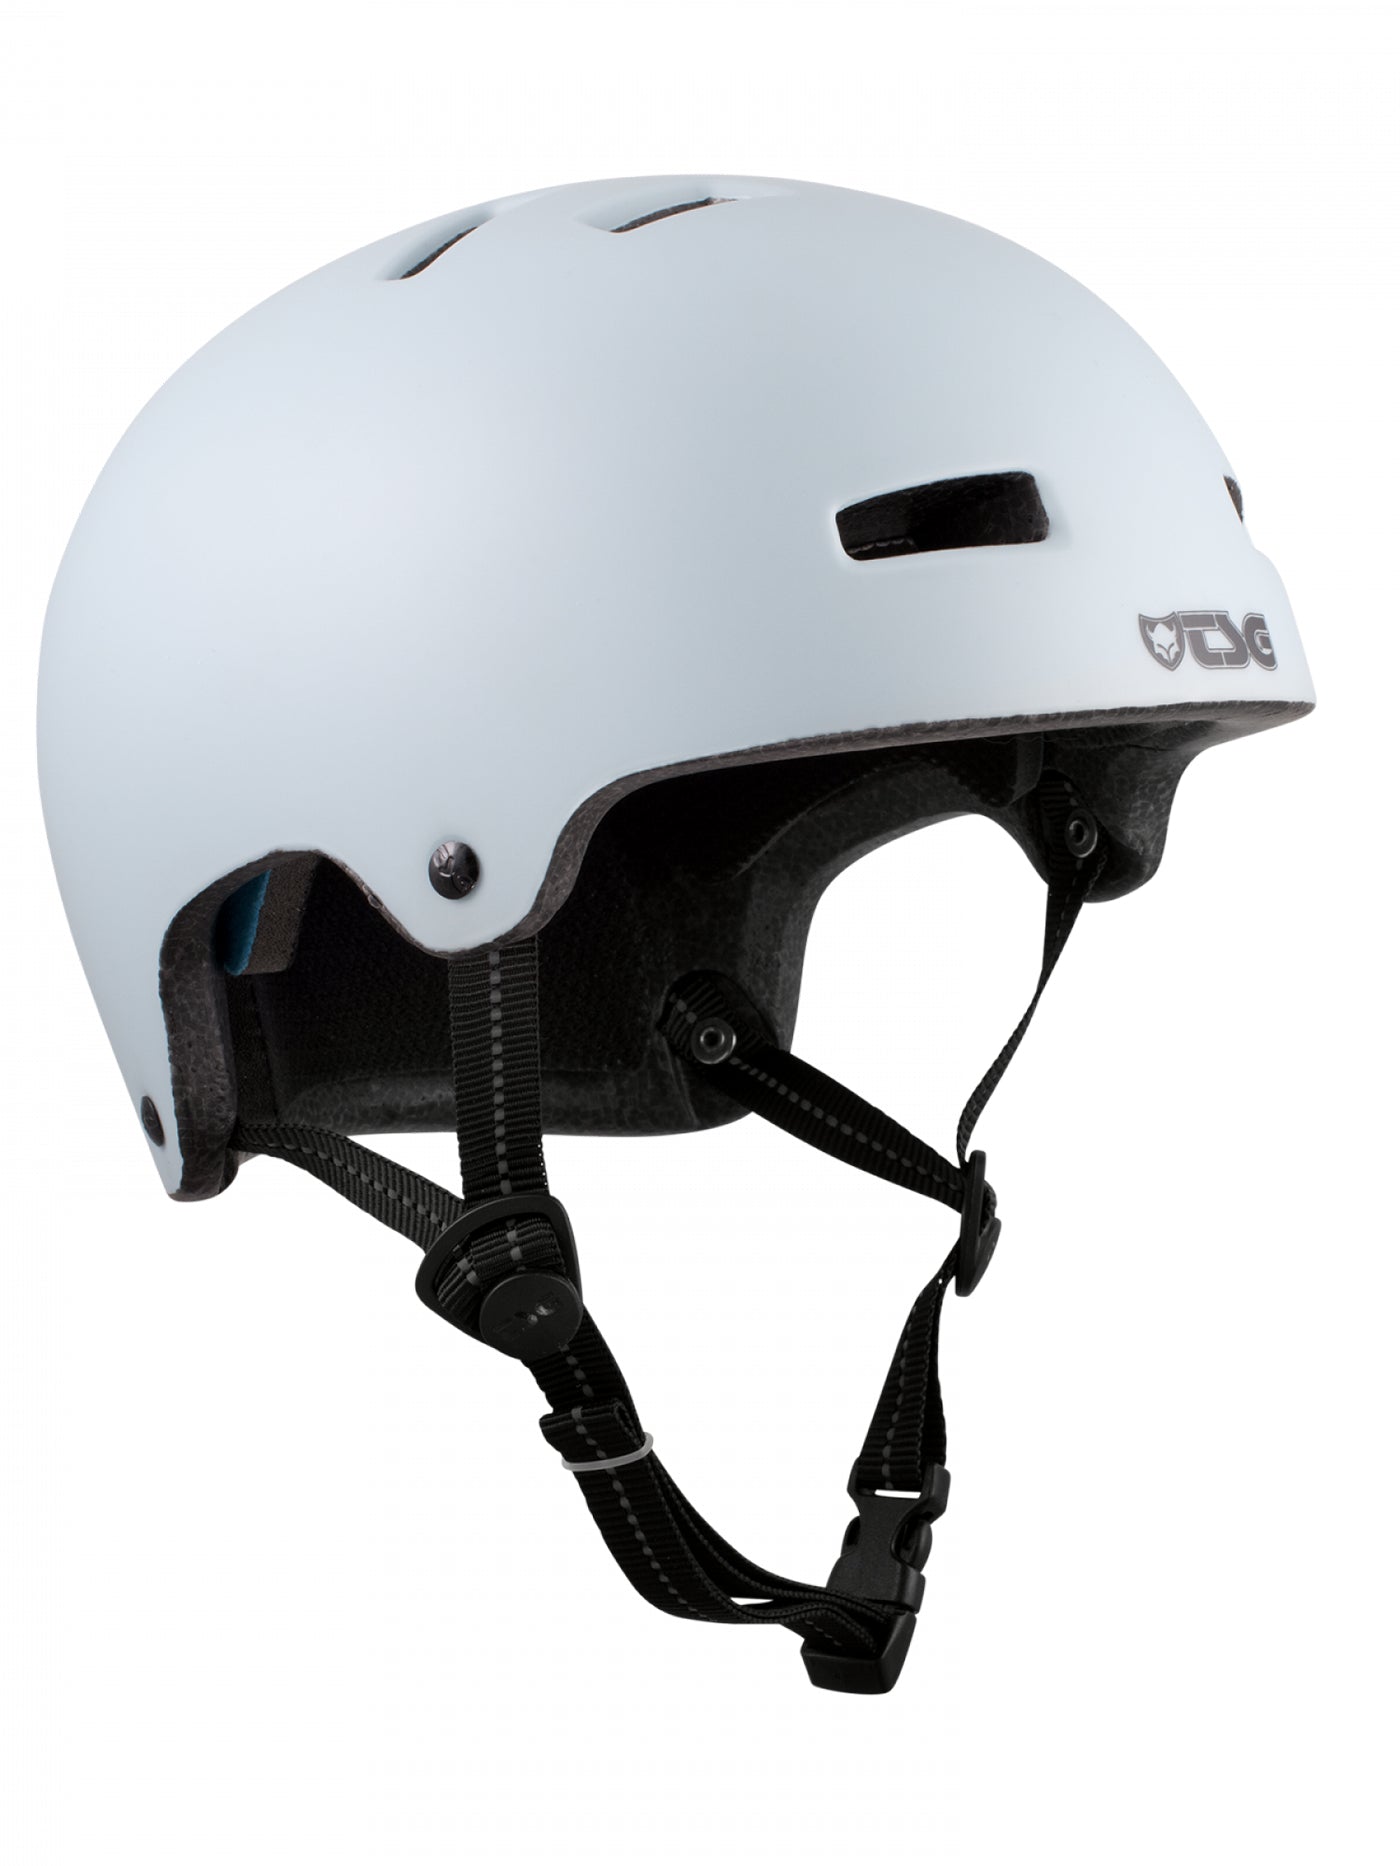 TSG Nipper Maxi Helmet